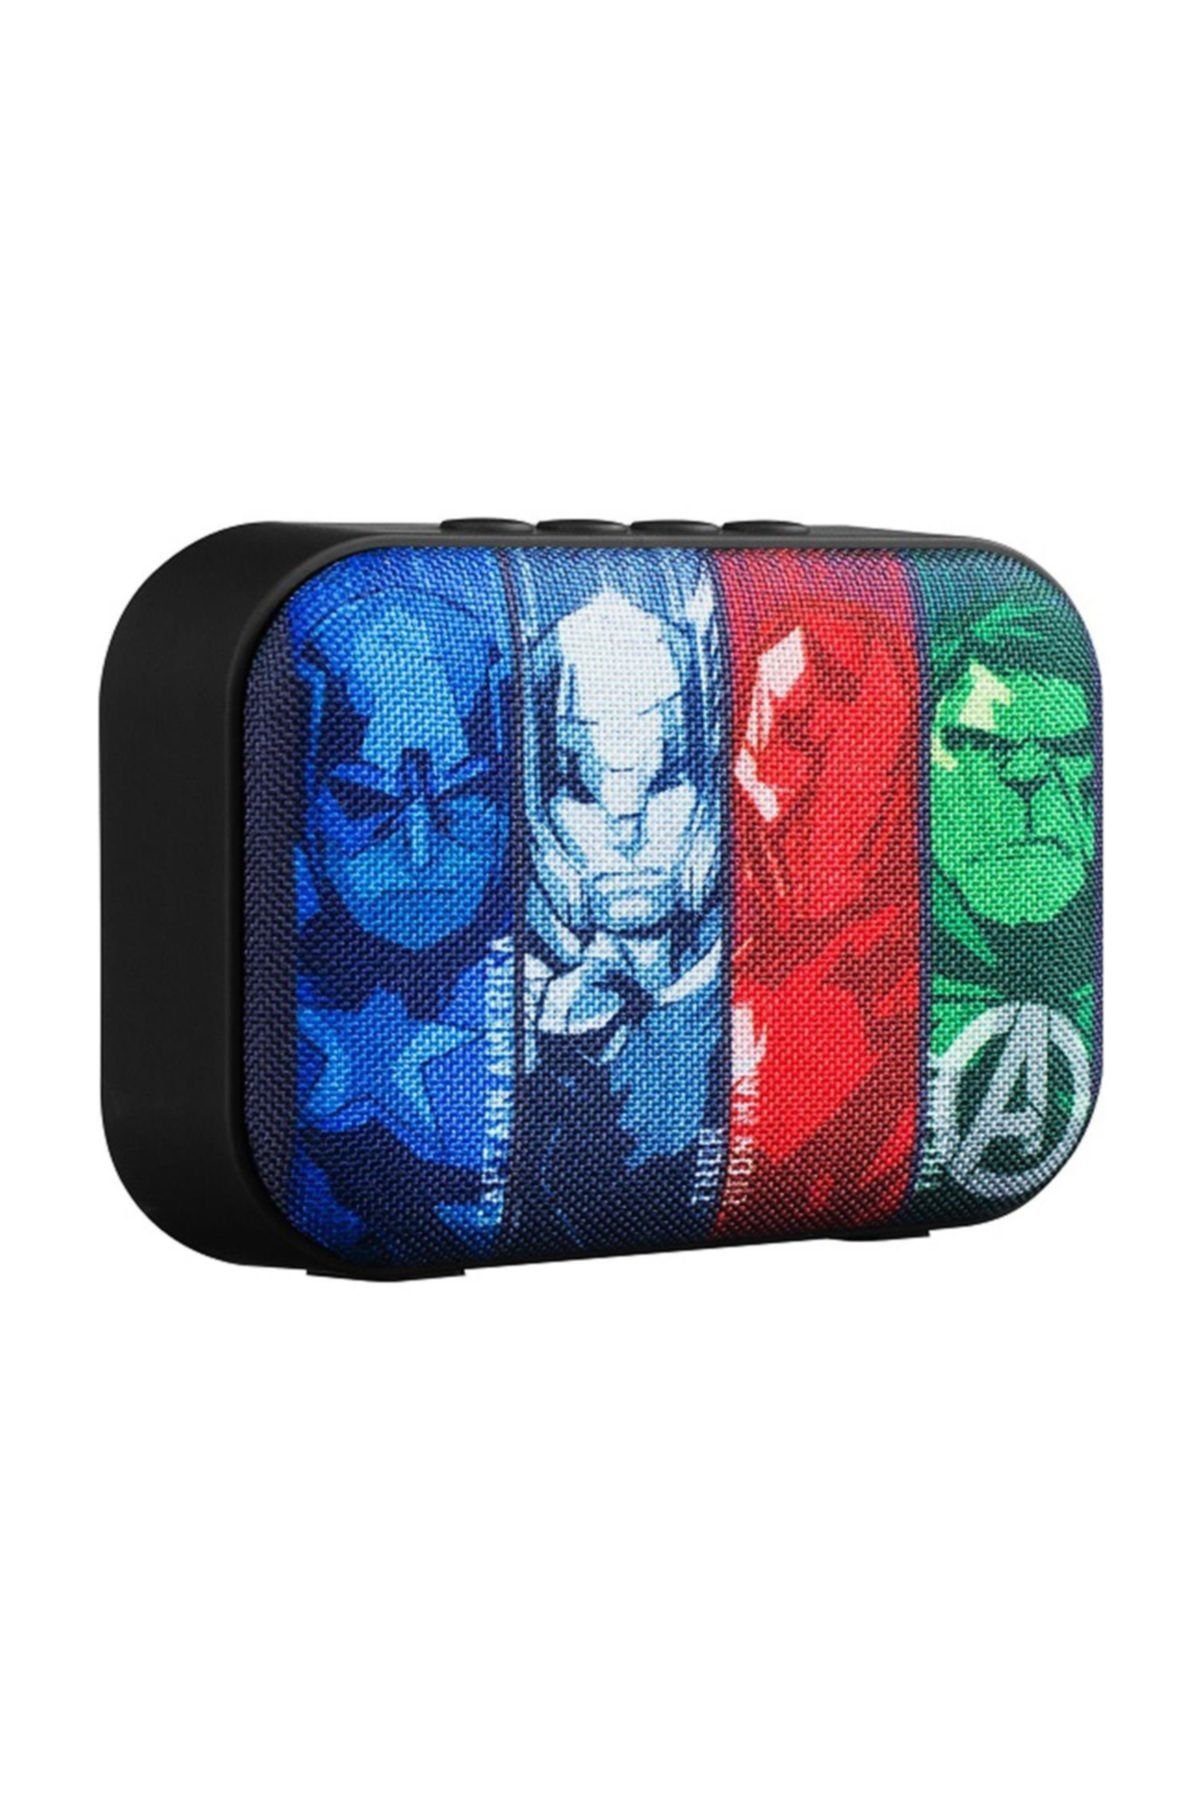 Volkano Marvel Avengers Yenilmezler Bluetooth Kablosuz Wireless Hoparlör Lisanslı Mv-1010-av